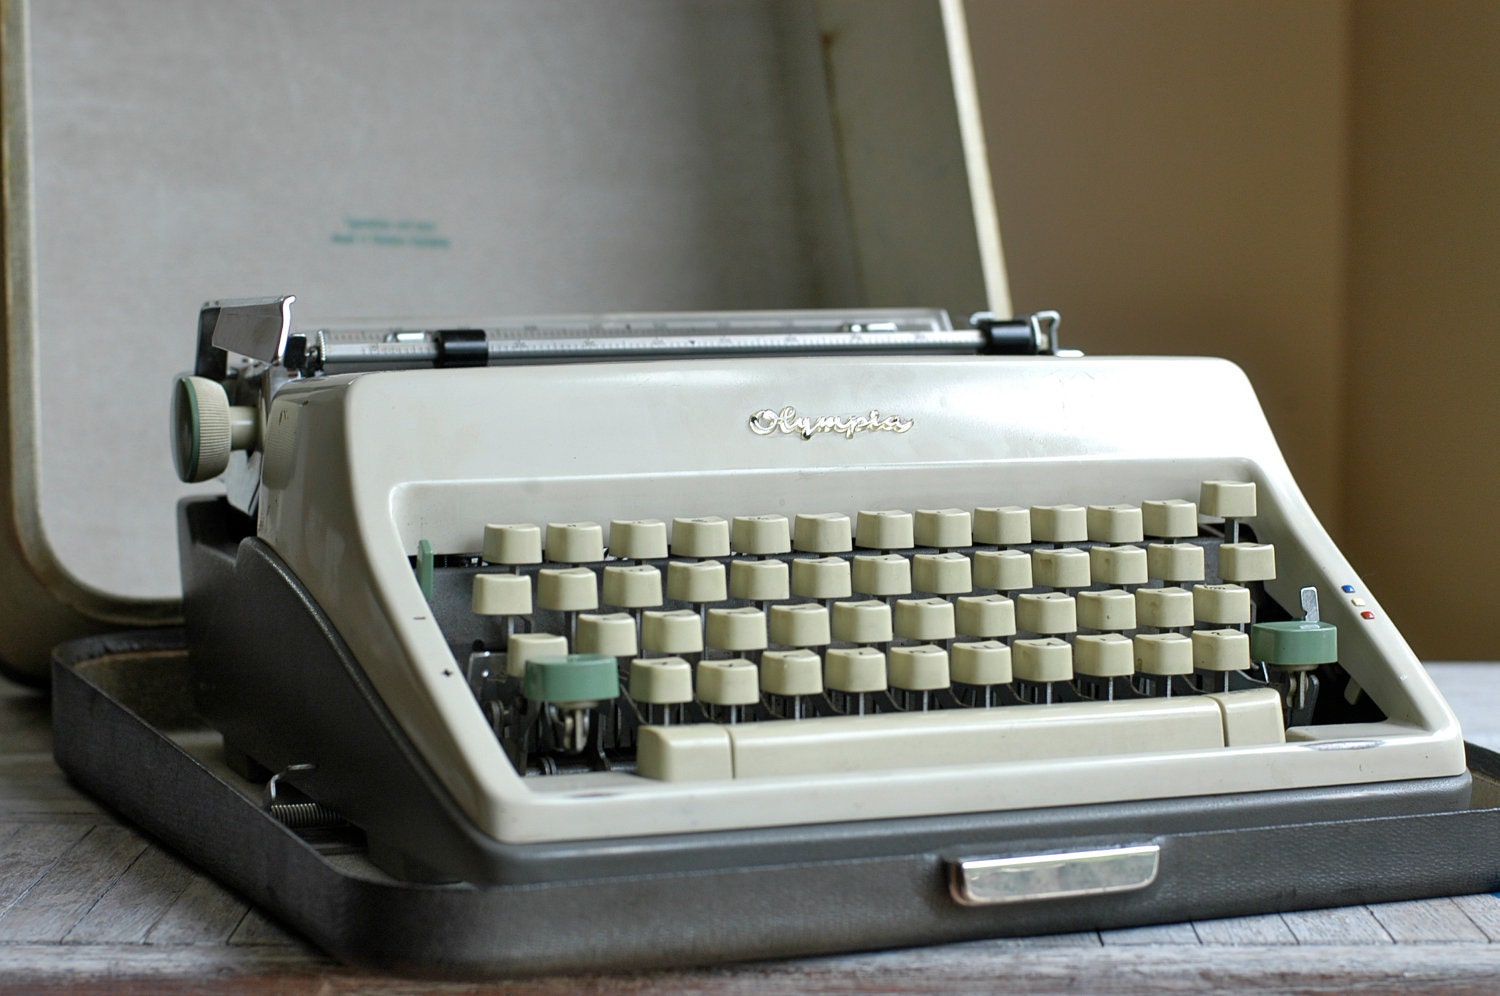 Olympia Manual Typewriter